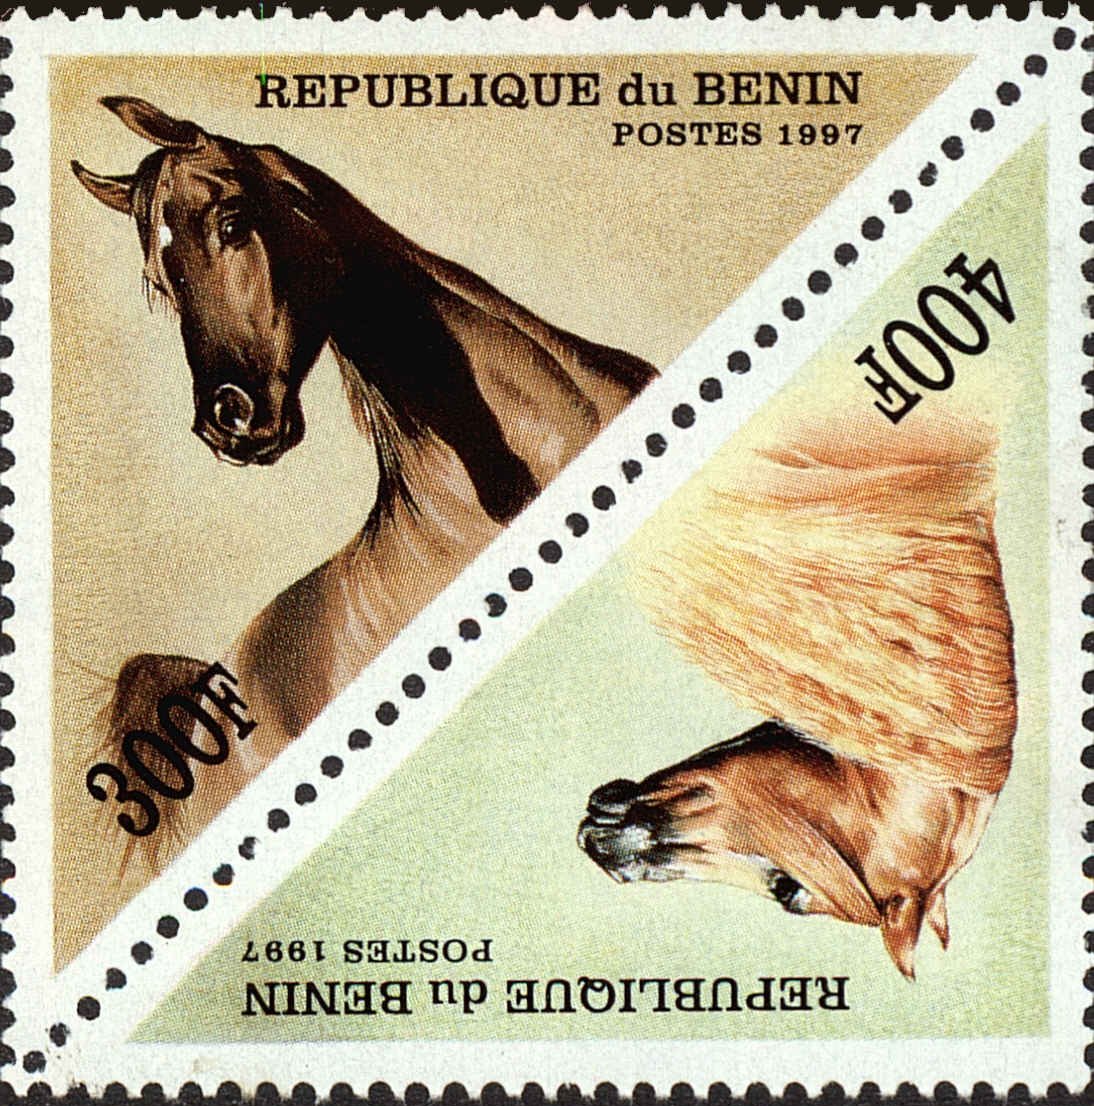 Front view of Benin 1053C collectors stamp